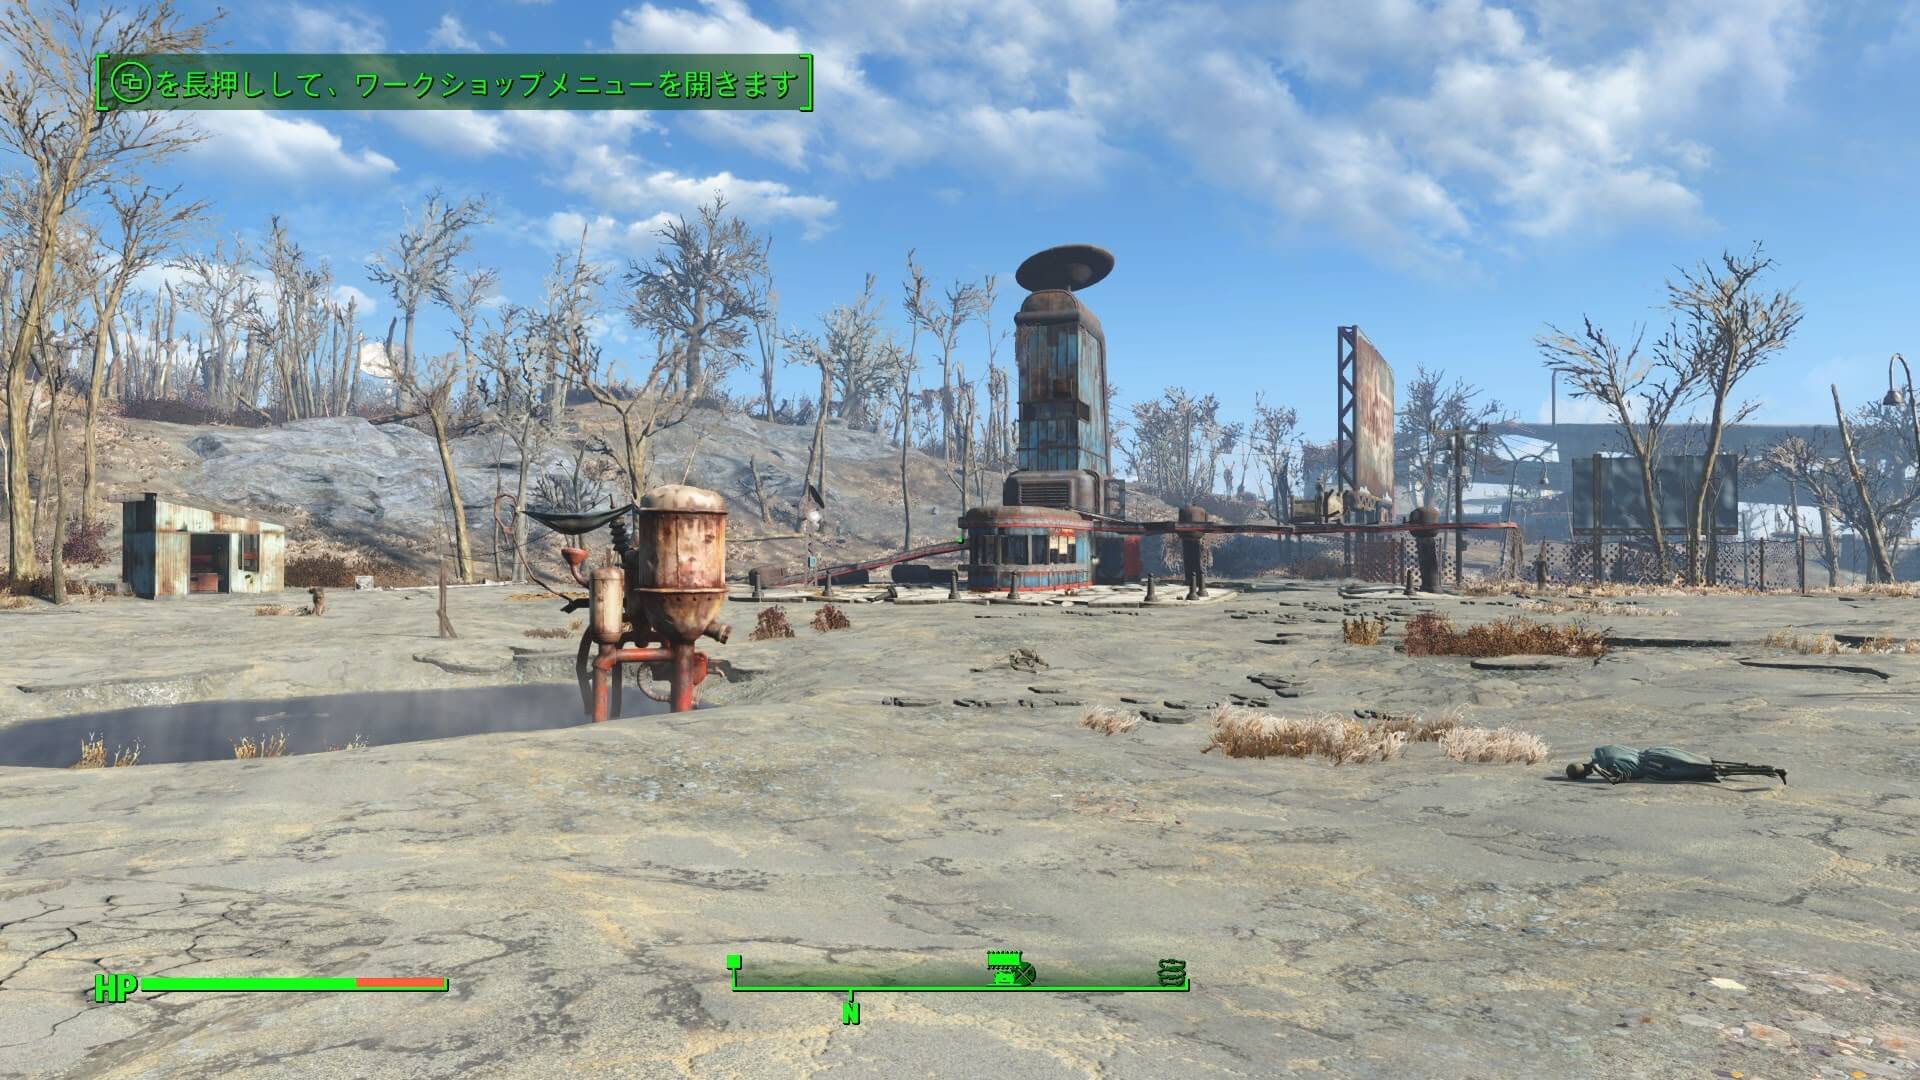 Fallout 4 真っ先に探すべき場所と 必ず発見できる裏ワザを紹介